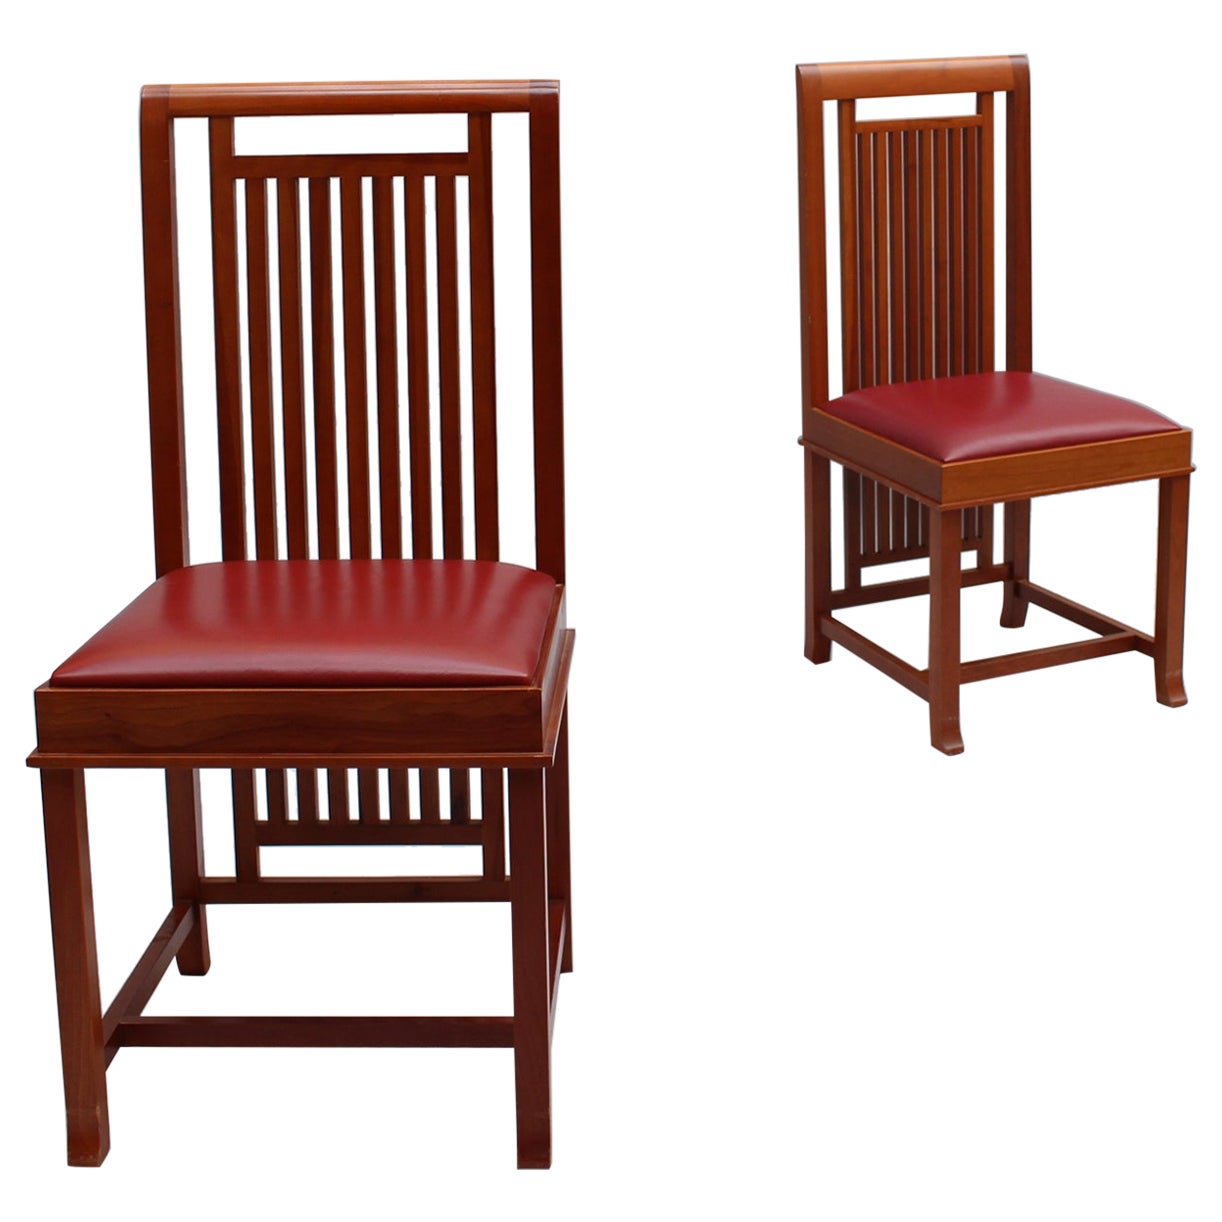 Paire de chaises « Coonley 2 » de Frank Lloyd Wright, édition Cassina